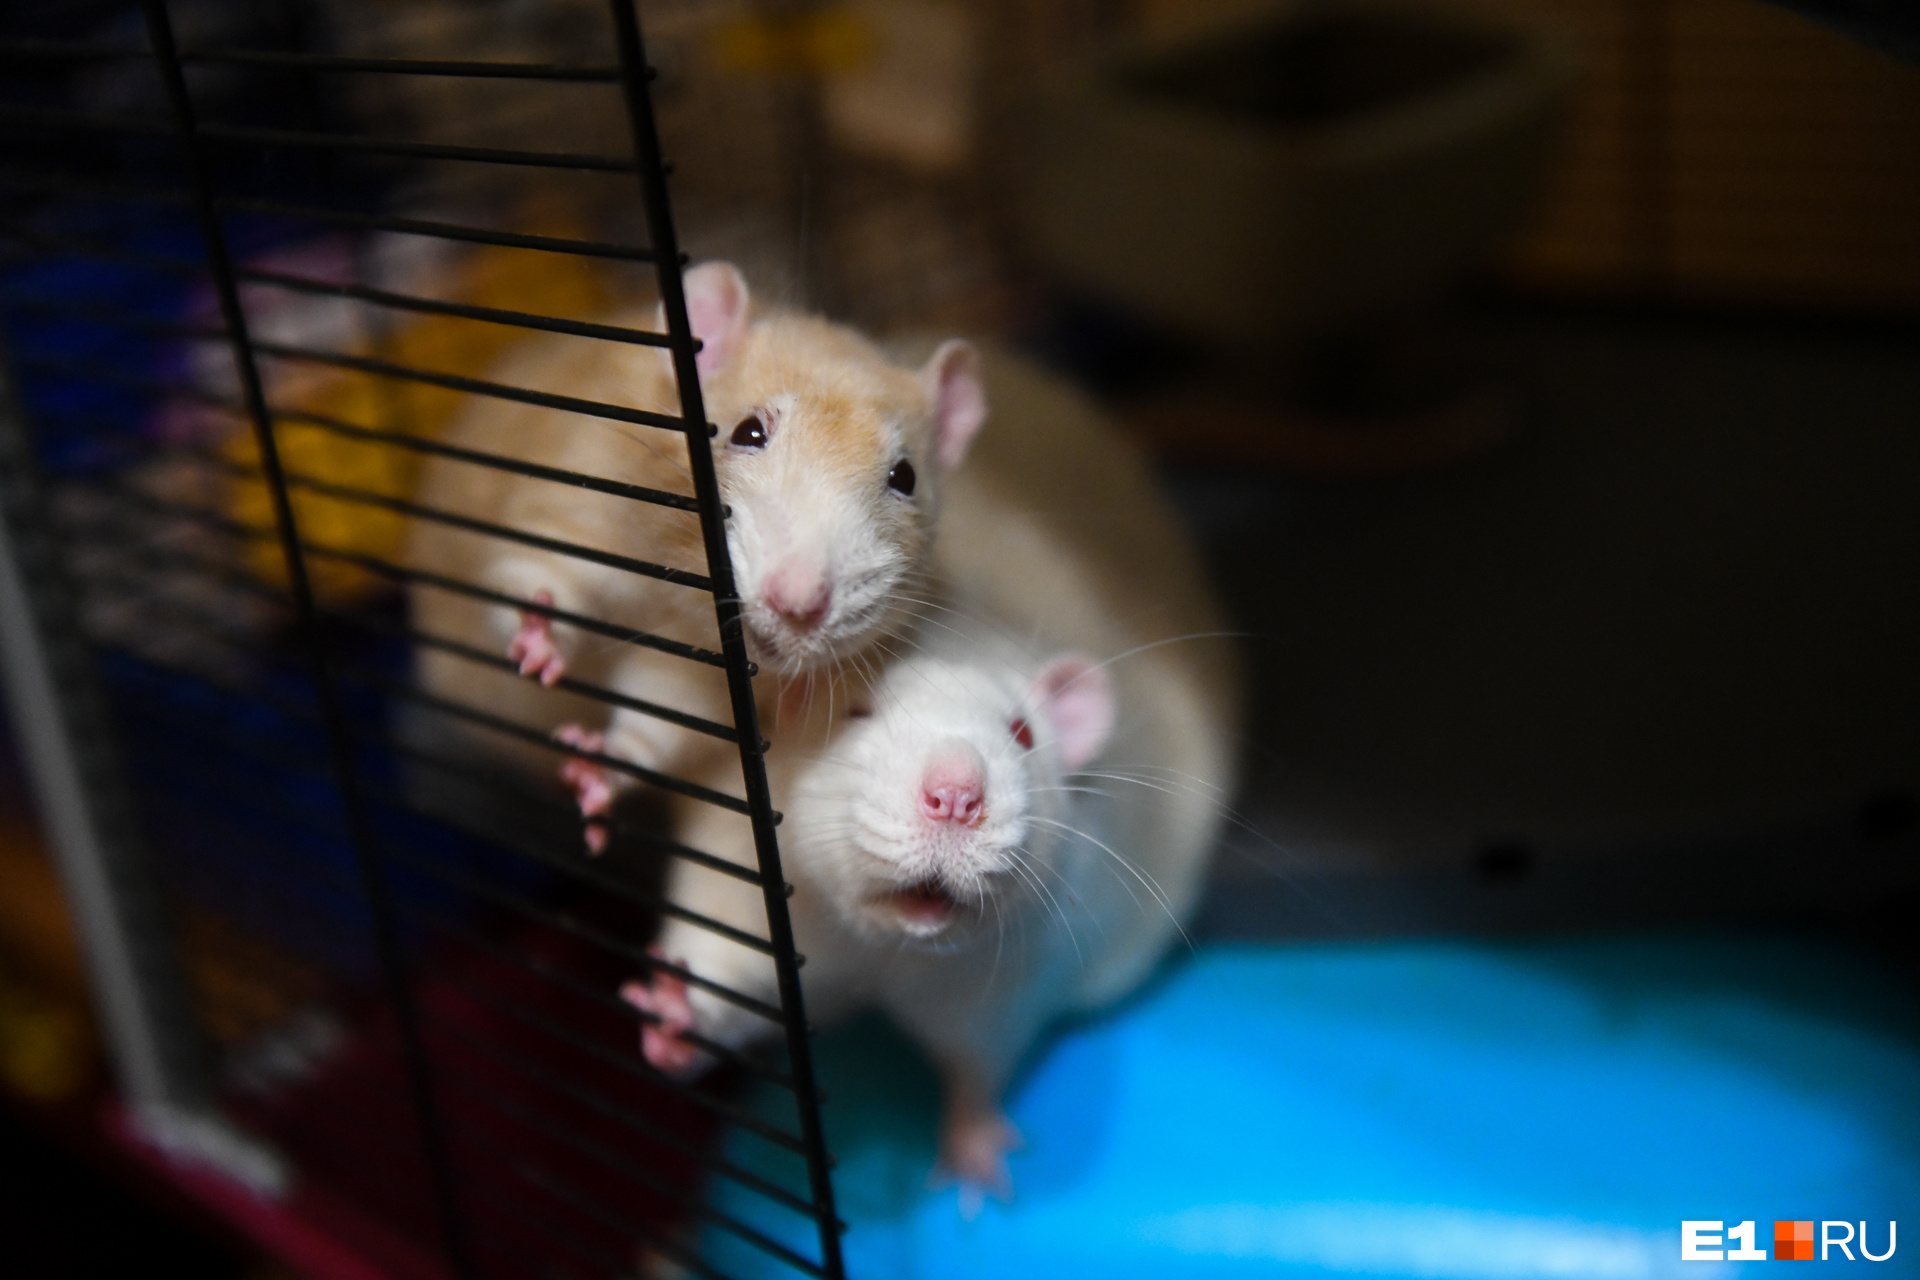 Отвечаем на вопросы про крыс к году Крысы - 27 декабря 2019 - Е1.ру